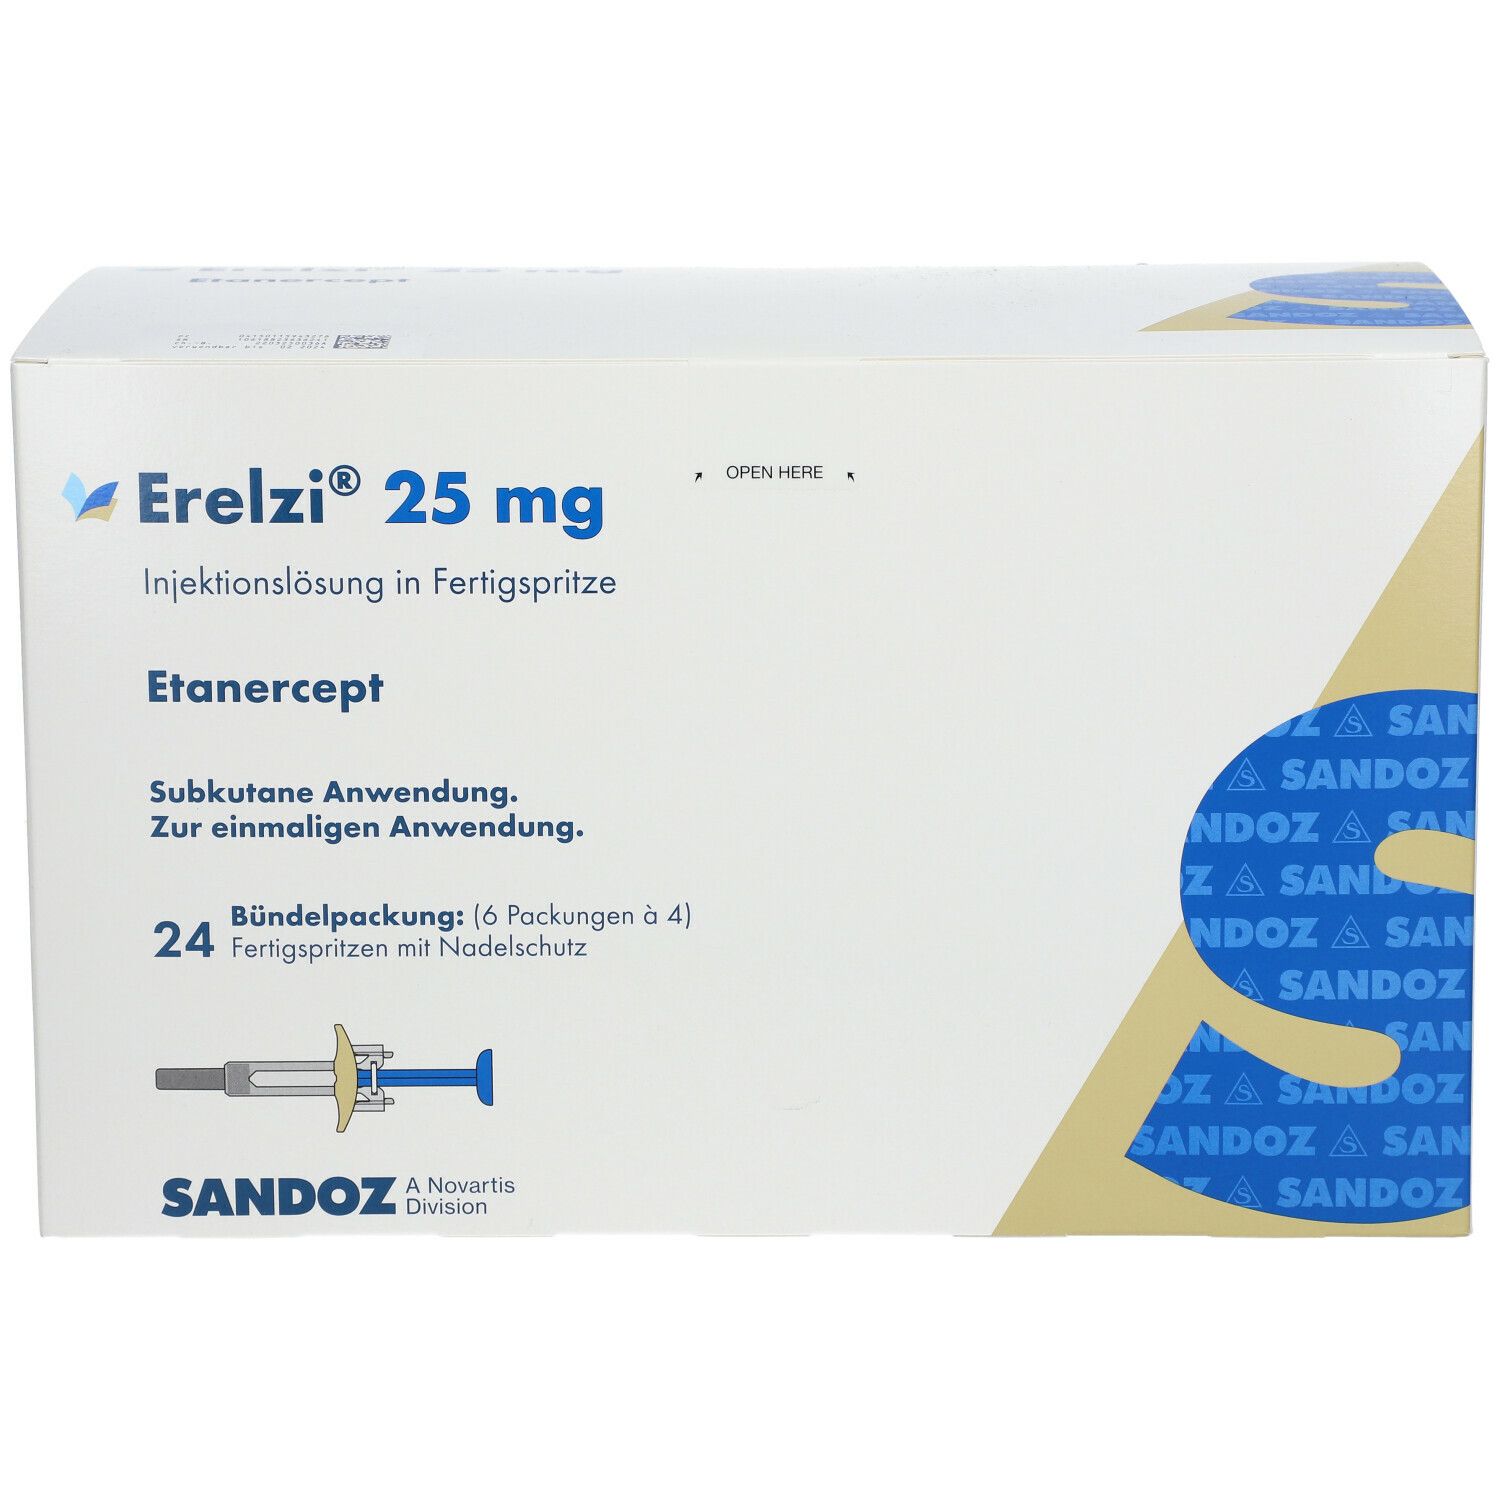 Erelzi® 25 mg